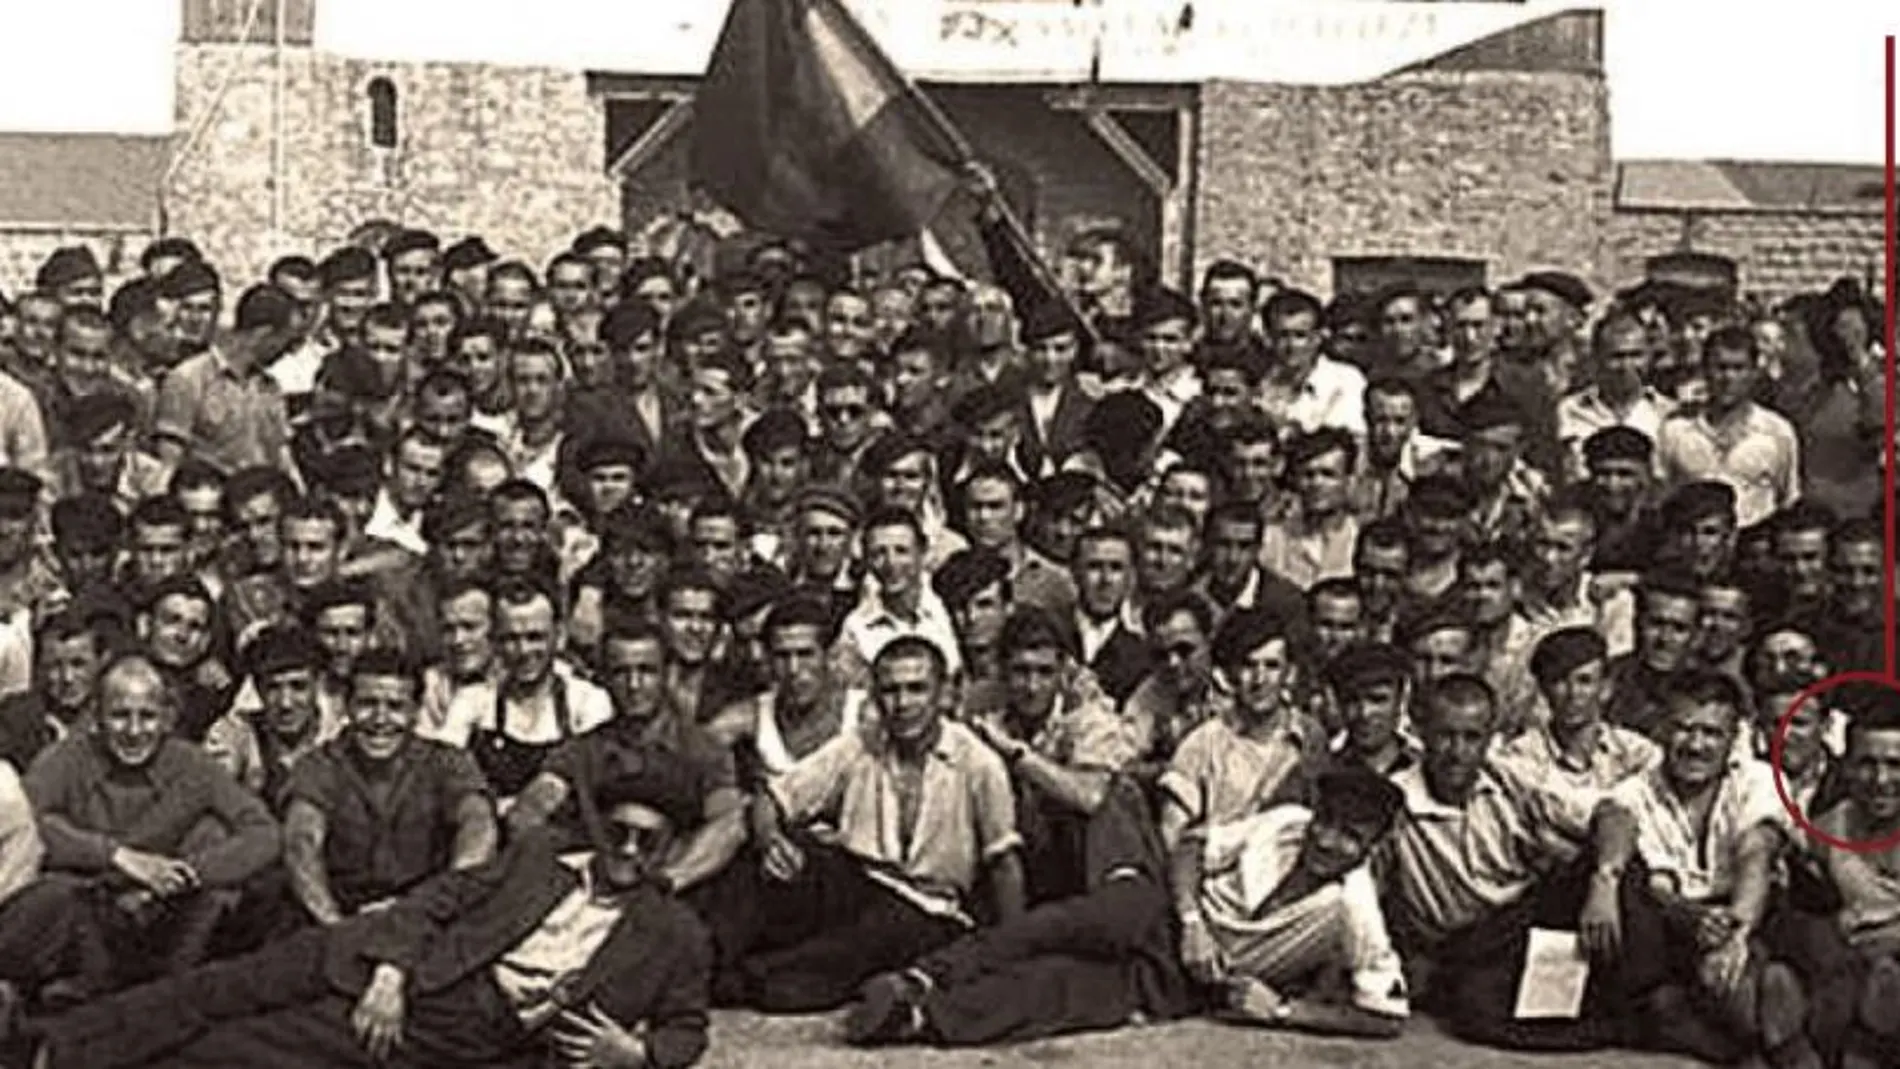 Una imagen de los presos que estaban internados en el campo de concentración de Mathausen, uno de los más célebres del holocausto y el horror nazi. Un círculo señala, entre los demás, la figura de Adolfo Maeso, uno de los afortunados que salió con vida